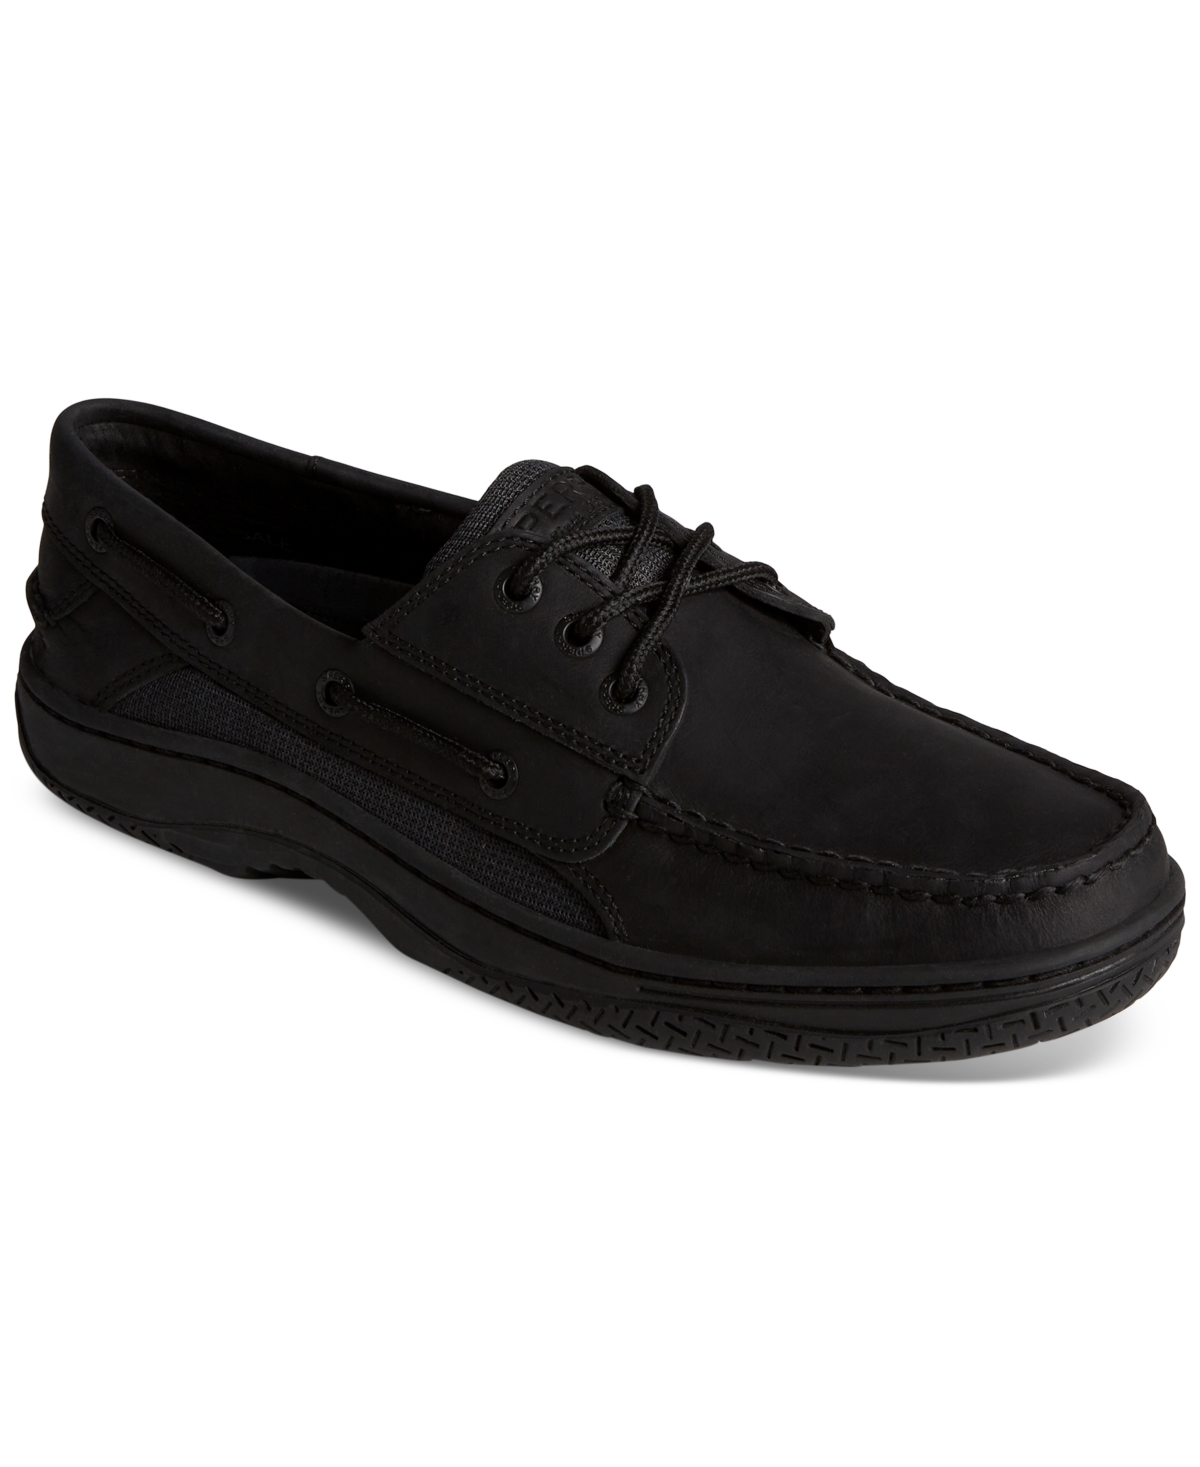 Sperry Men's Billfish 3-eye Moc Toe Boat Shoes In Black